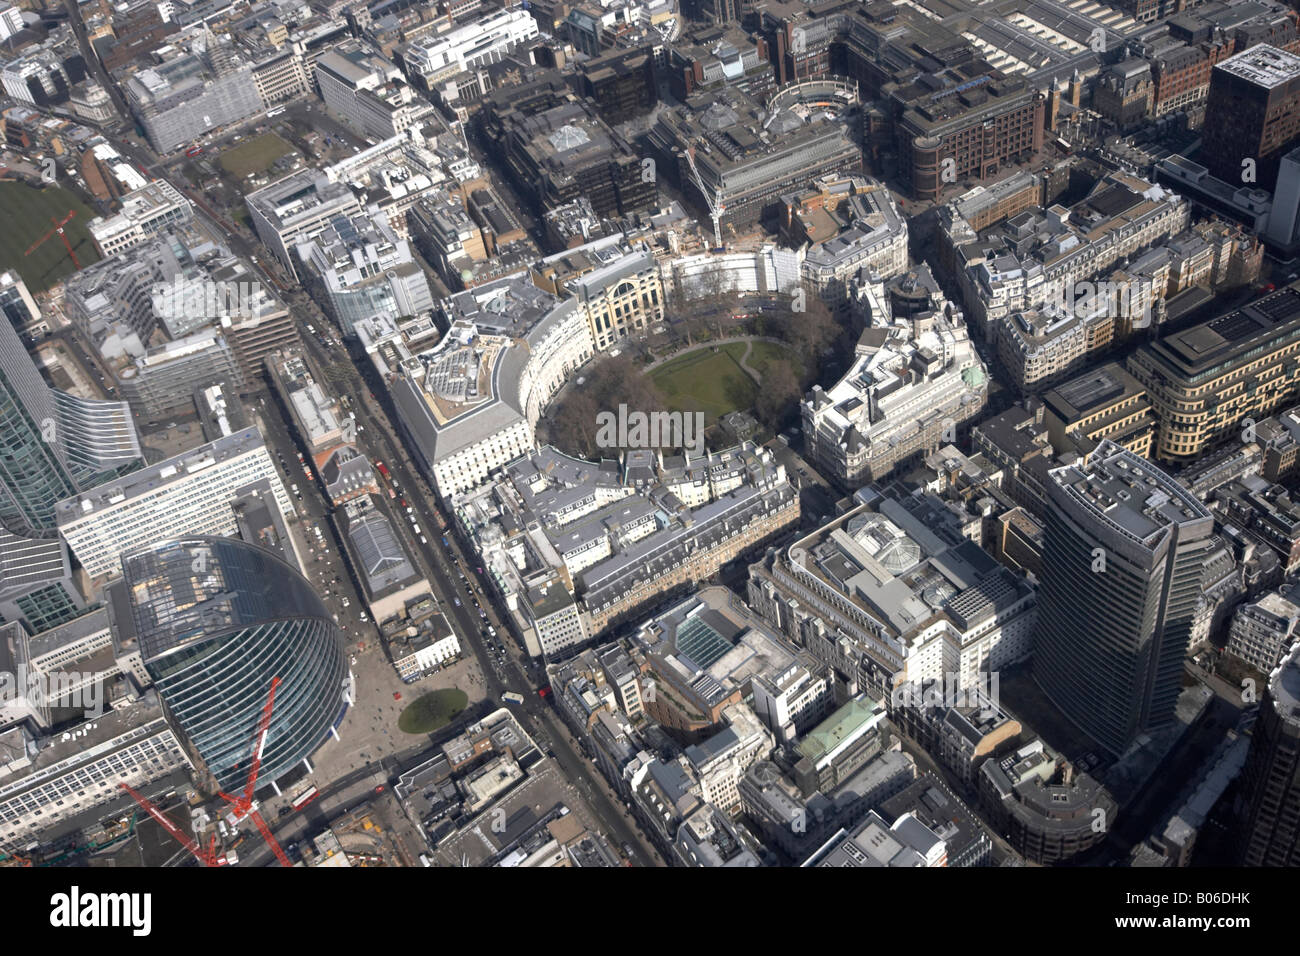 Vue aérienne au nord-est de Finsbury Circus City of London EC2 England UK oblique de haut niveau Banque D'Images